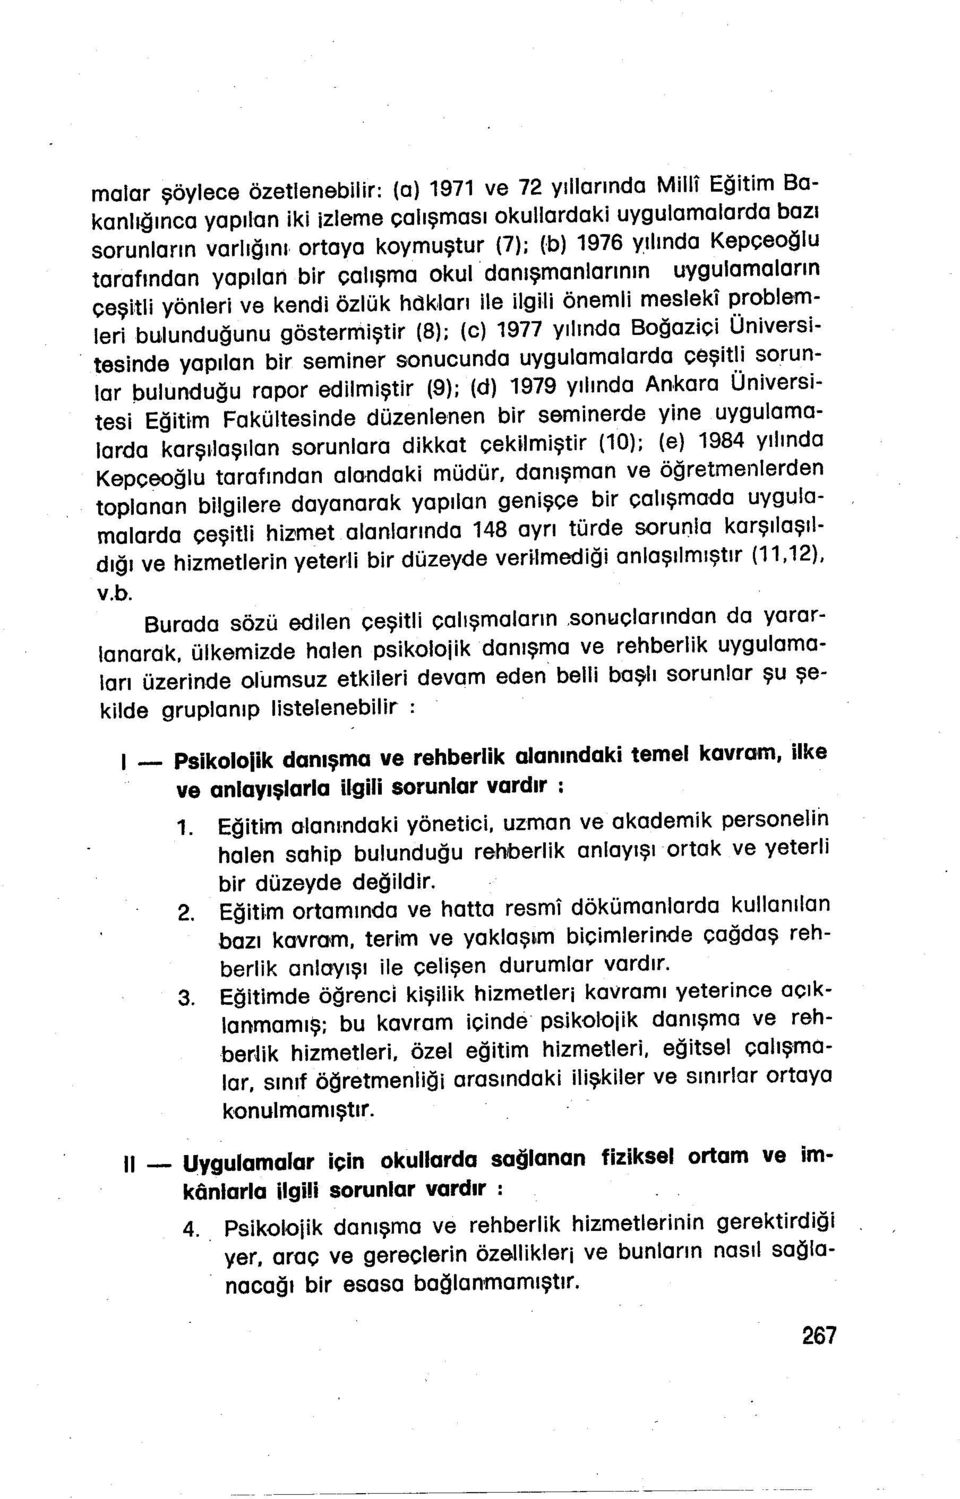 yılında Boğaziçi Üniversitesinde yapılan bir seminer sonucunda uygulamalarda çeşitli sorunlar pulunduğu rapor edilmiştir (9); (d) 1979 yılında Ankara Üniversitesi Eğitim Fakültesinde düzenlenen bir